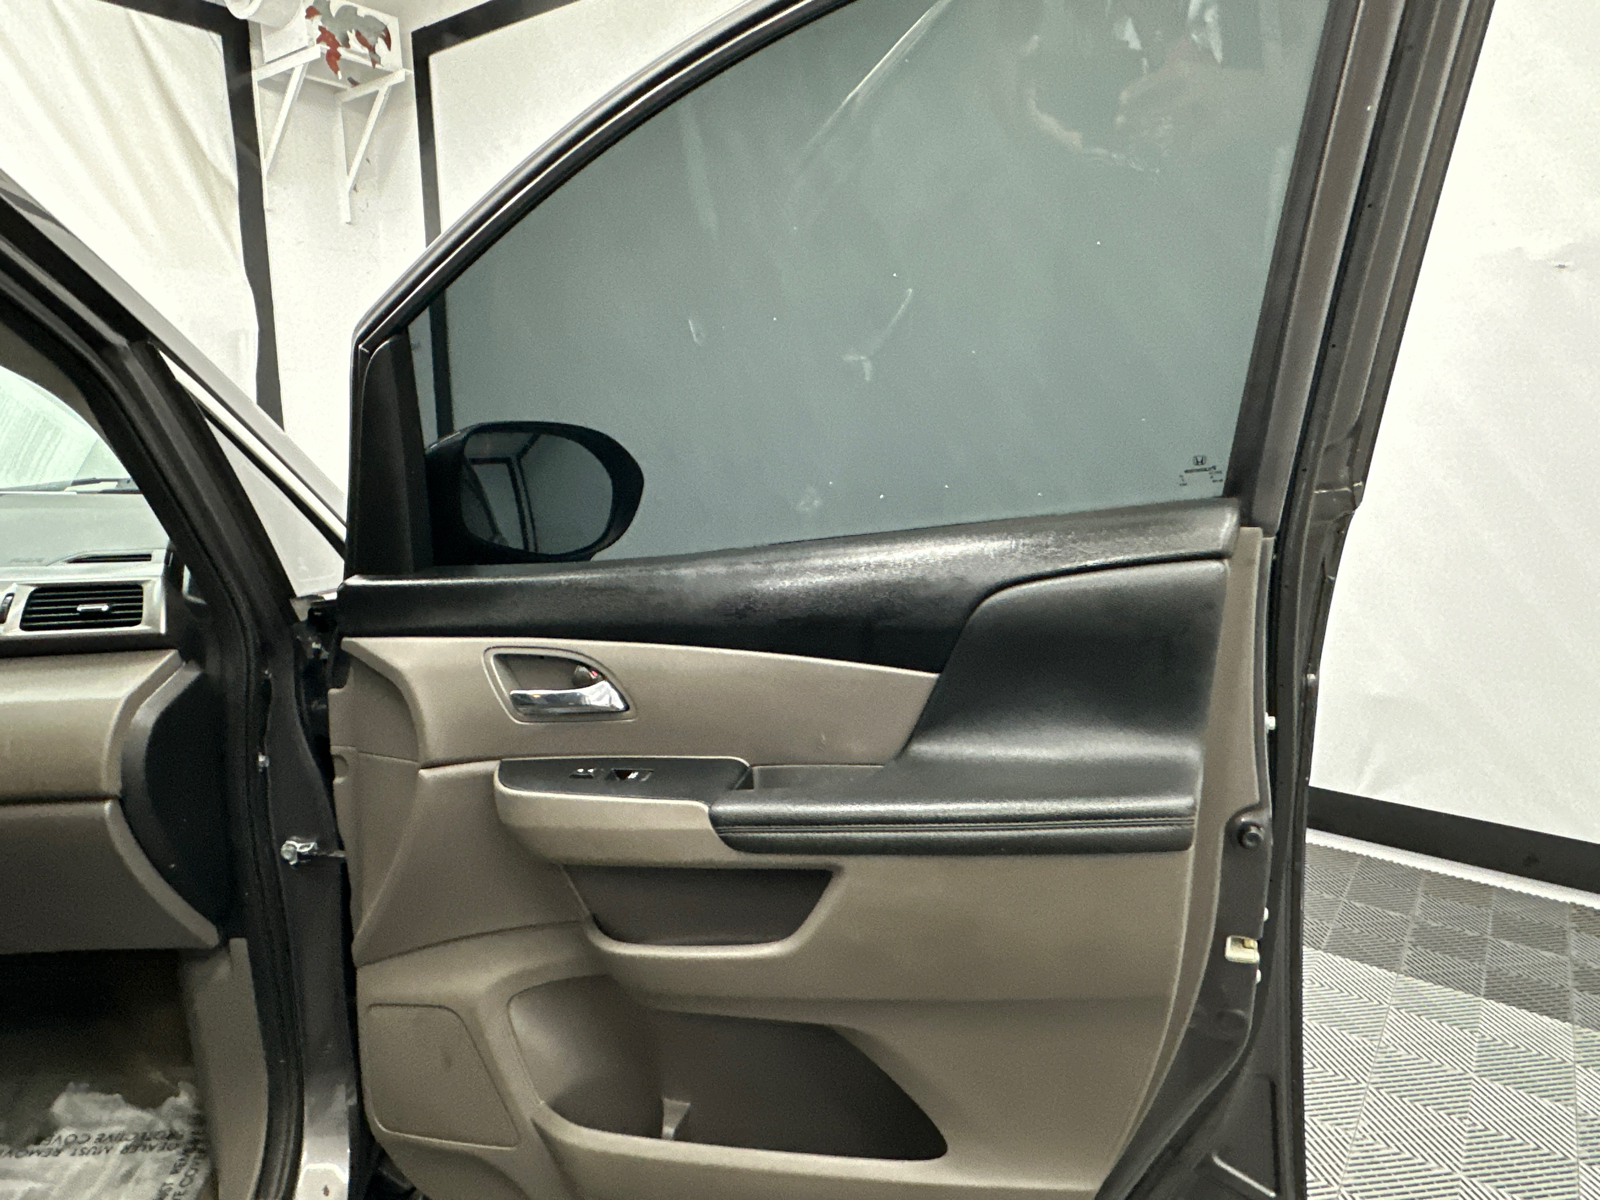 2015 Honda Odyssey EX-L 16